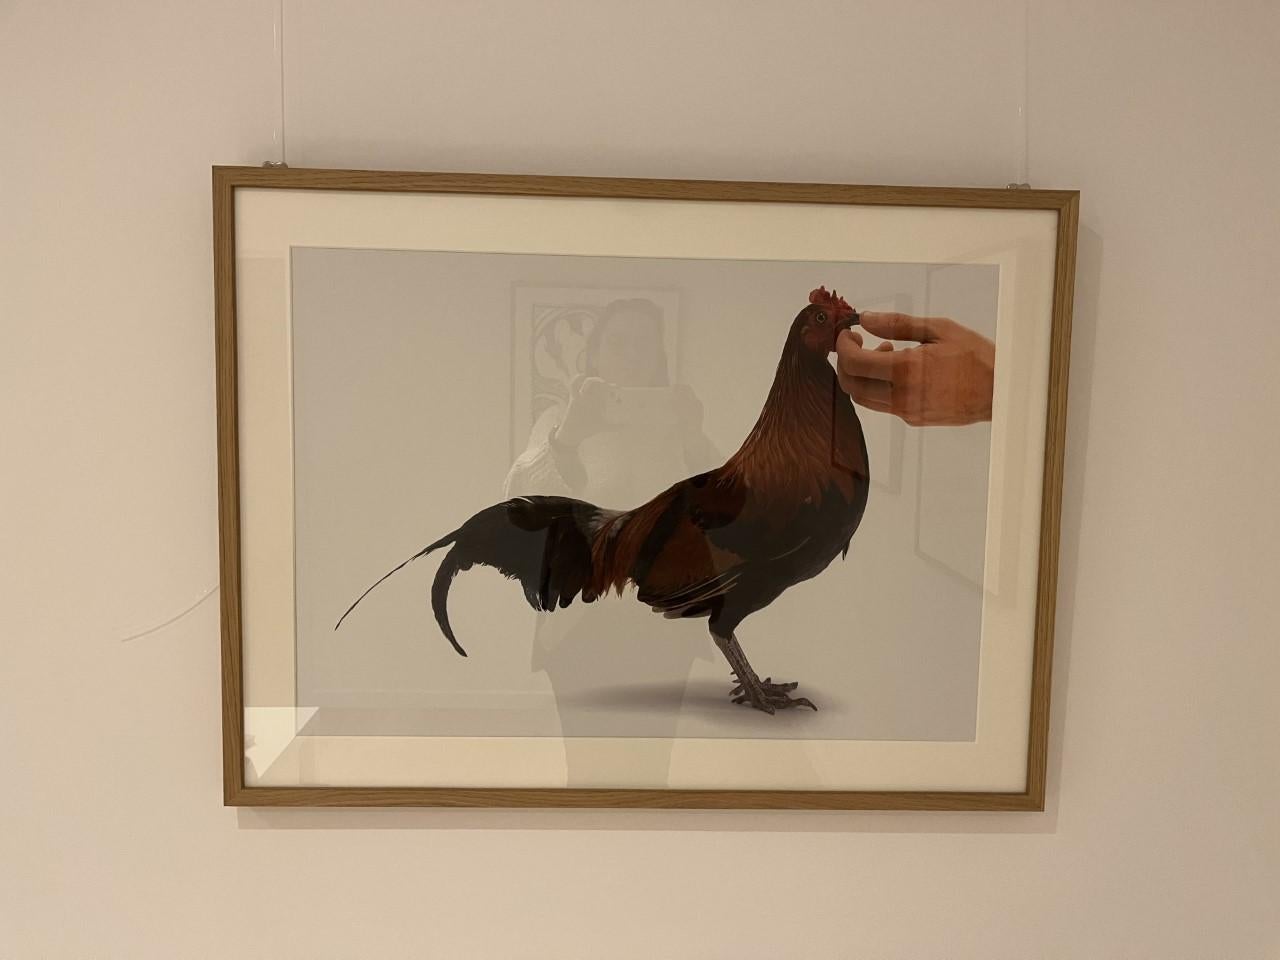 Feeding Chicken Lithograph - Print by Vanmechelen Koen